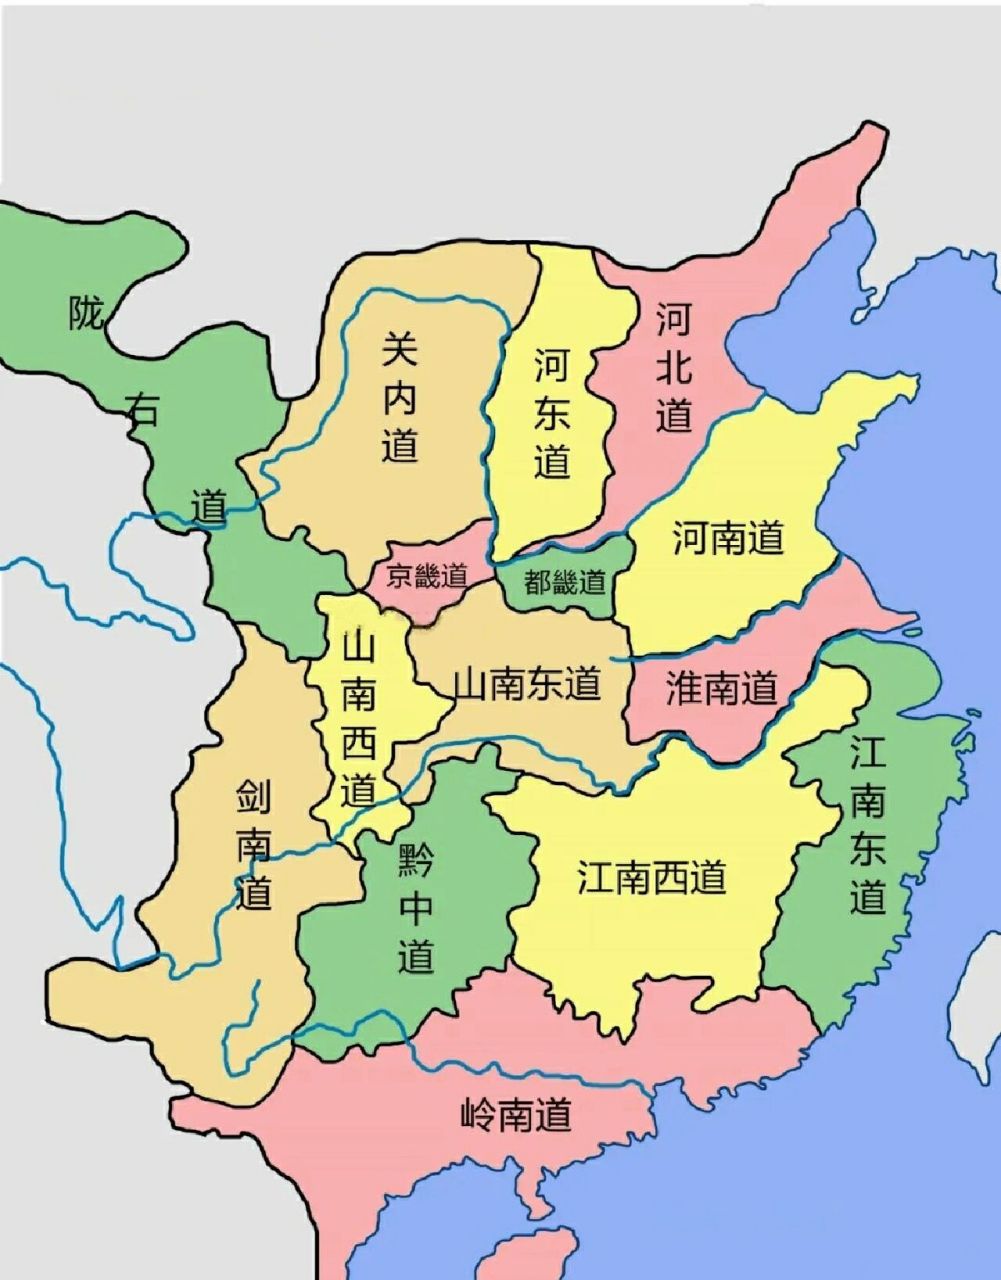 唐朝前期的行政区划图 隋朝建立后,鉴于州郡太多,于是废除了郡,直接以